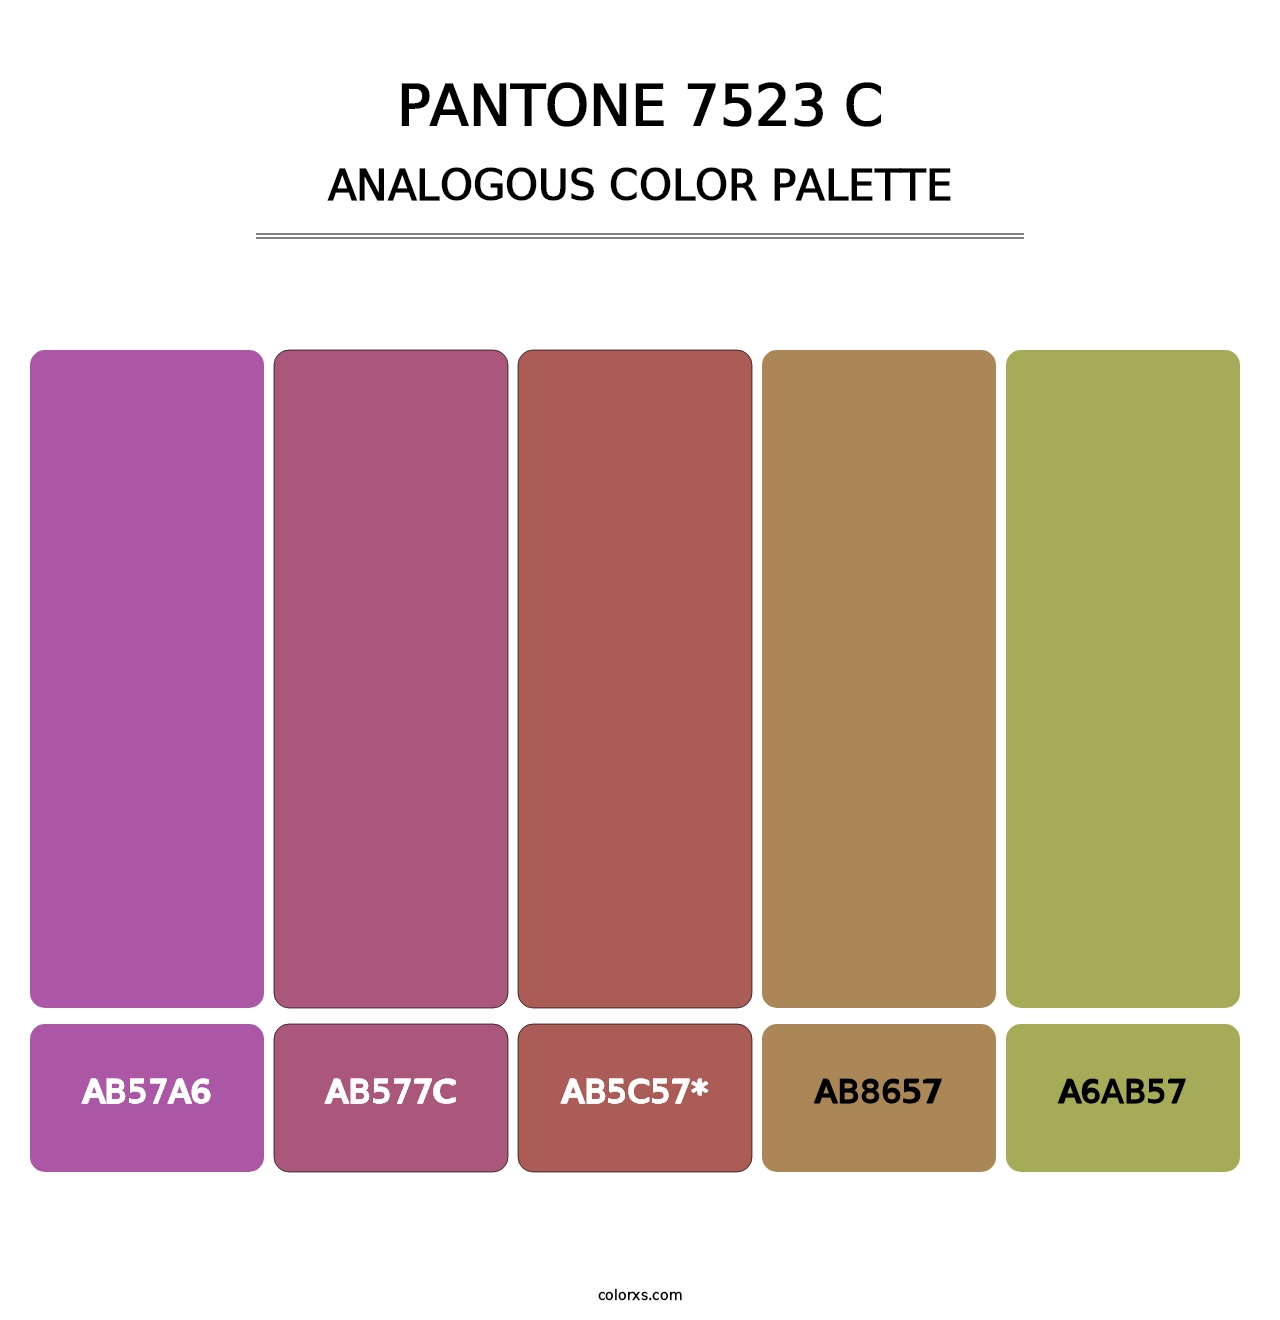 PANTONE 7523 C - Analogous Color Palette